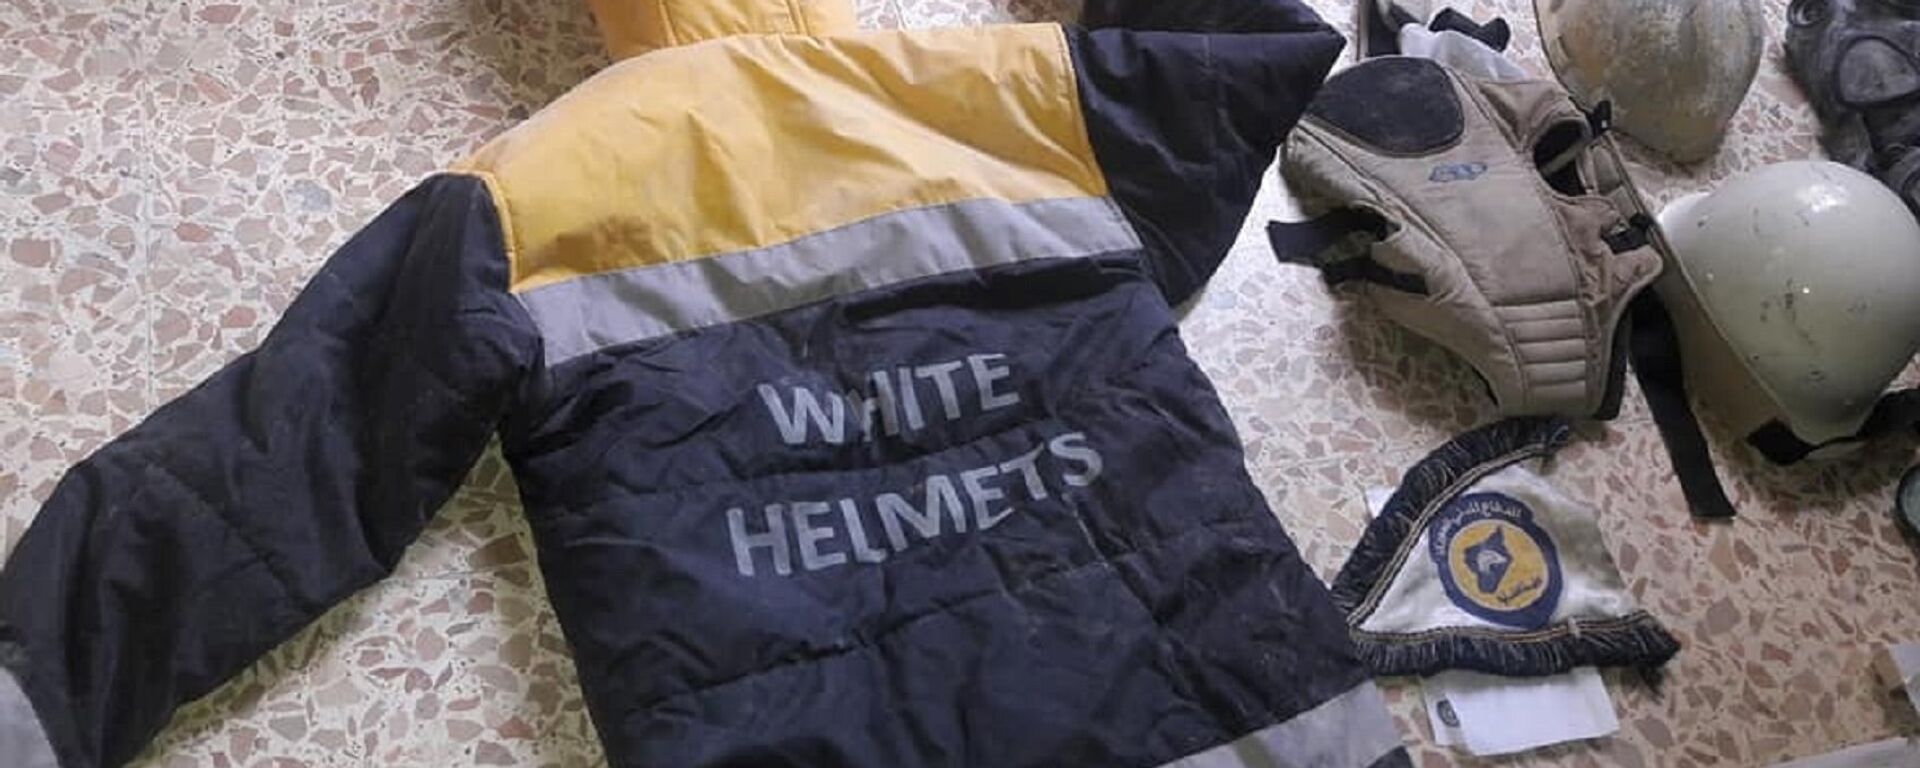 El uniforme de los Cascos Blancos hallado en un laboratorio en Guta Oriental - Sputnik Mundo, 1920, 03.09.2020